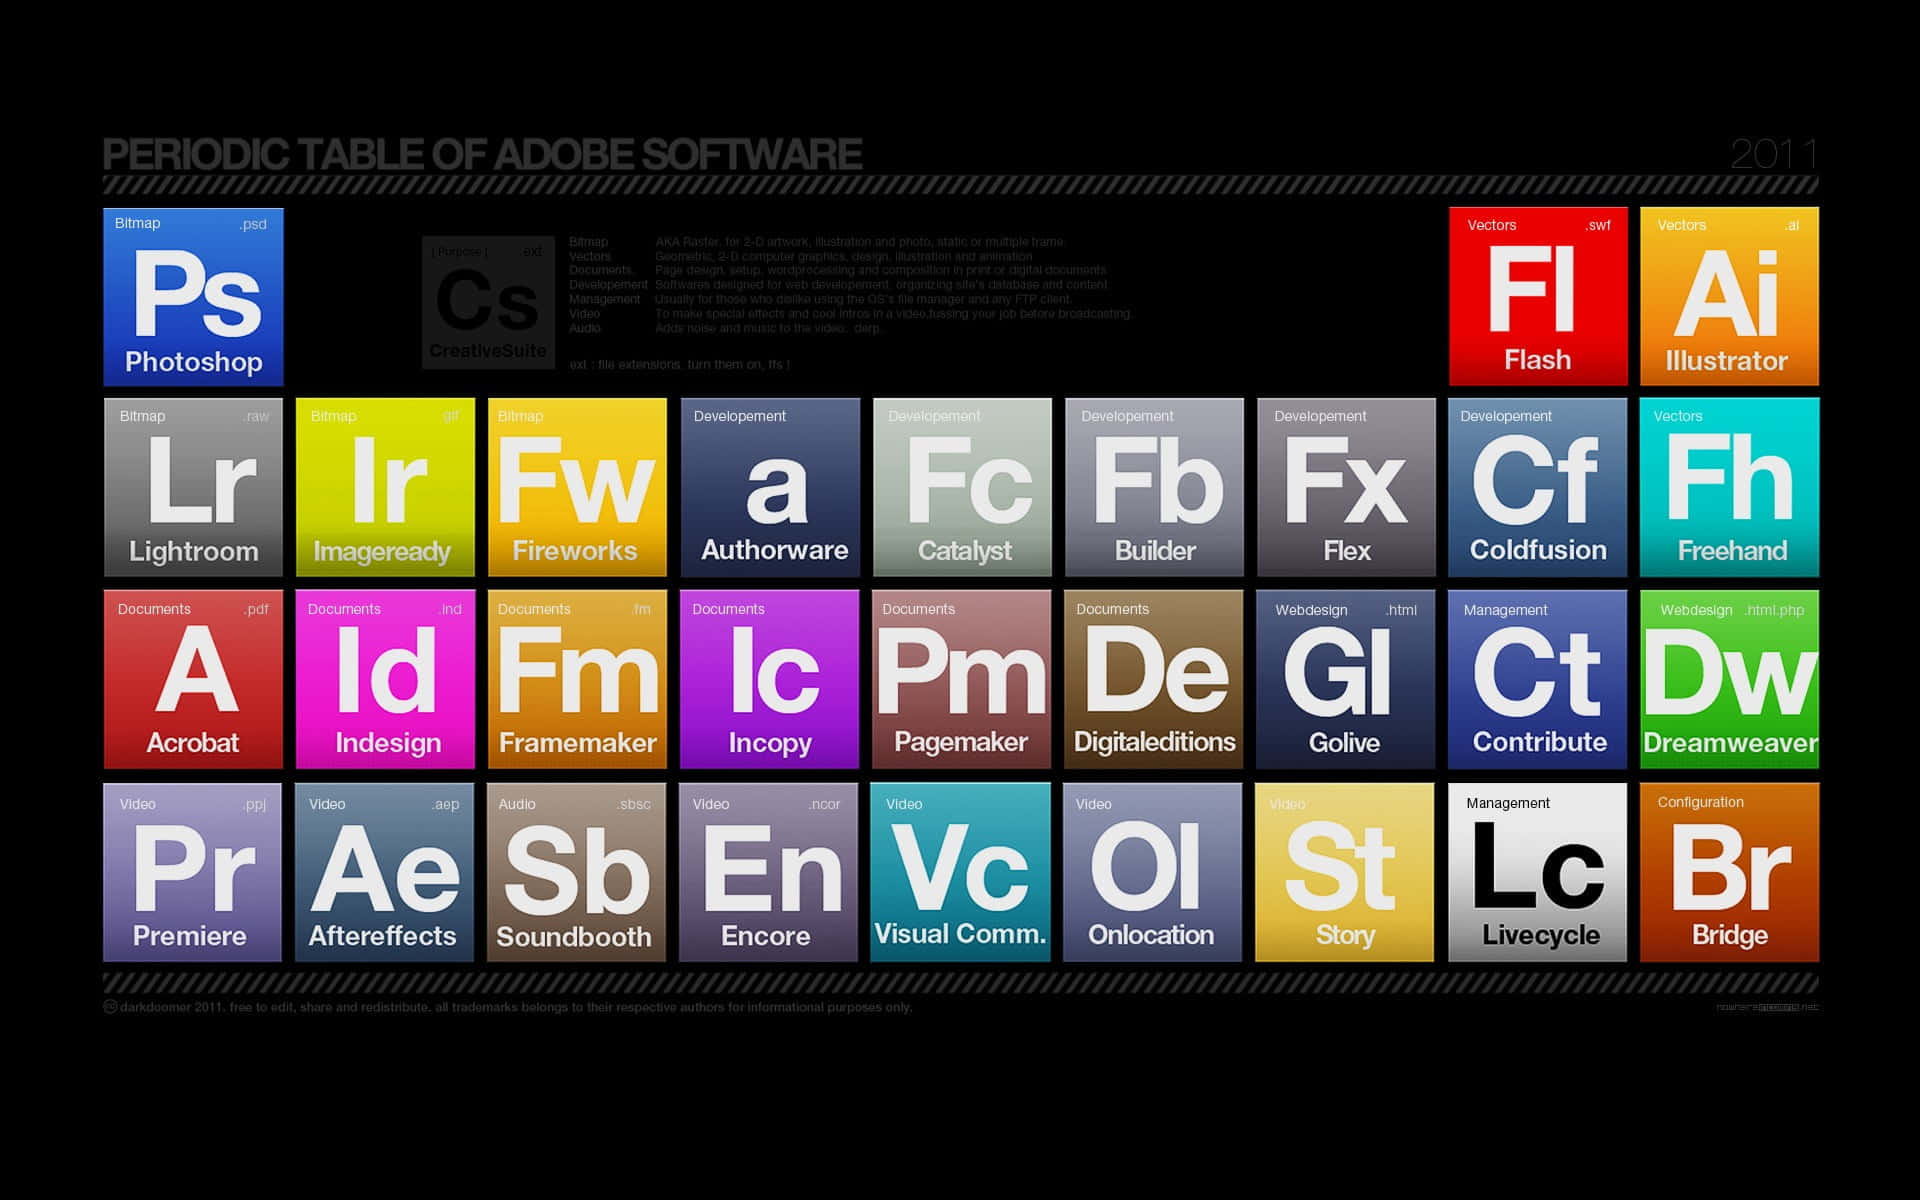 Dreamweaver Desktop Software Wallpaper